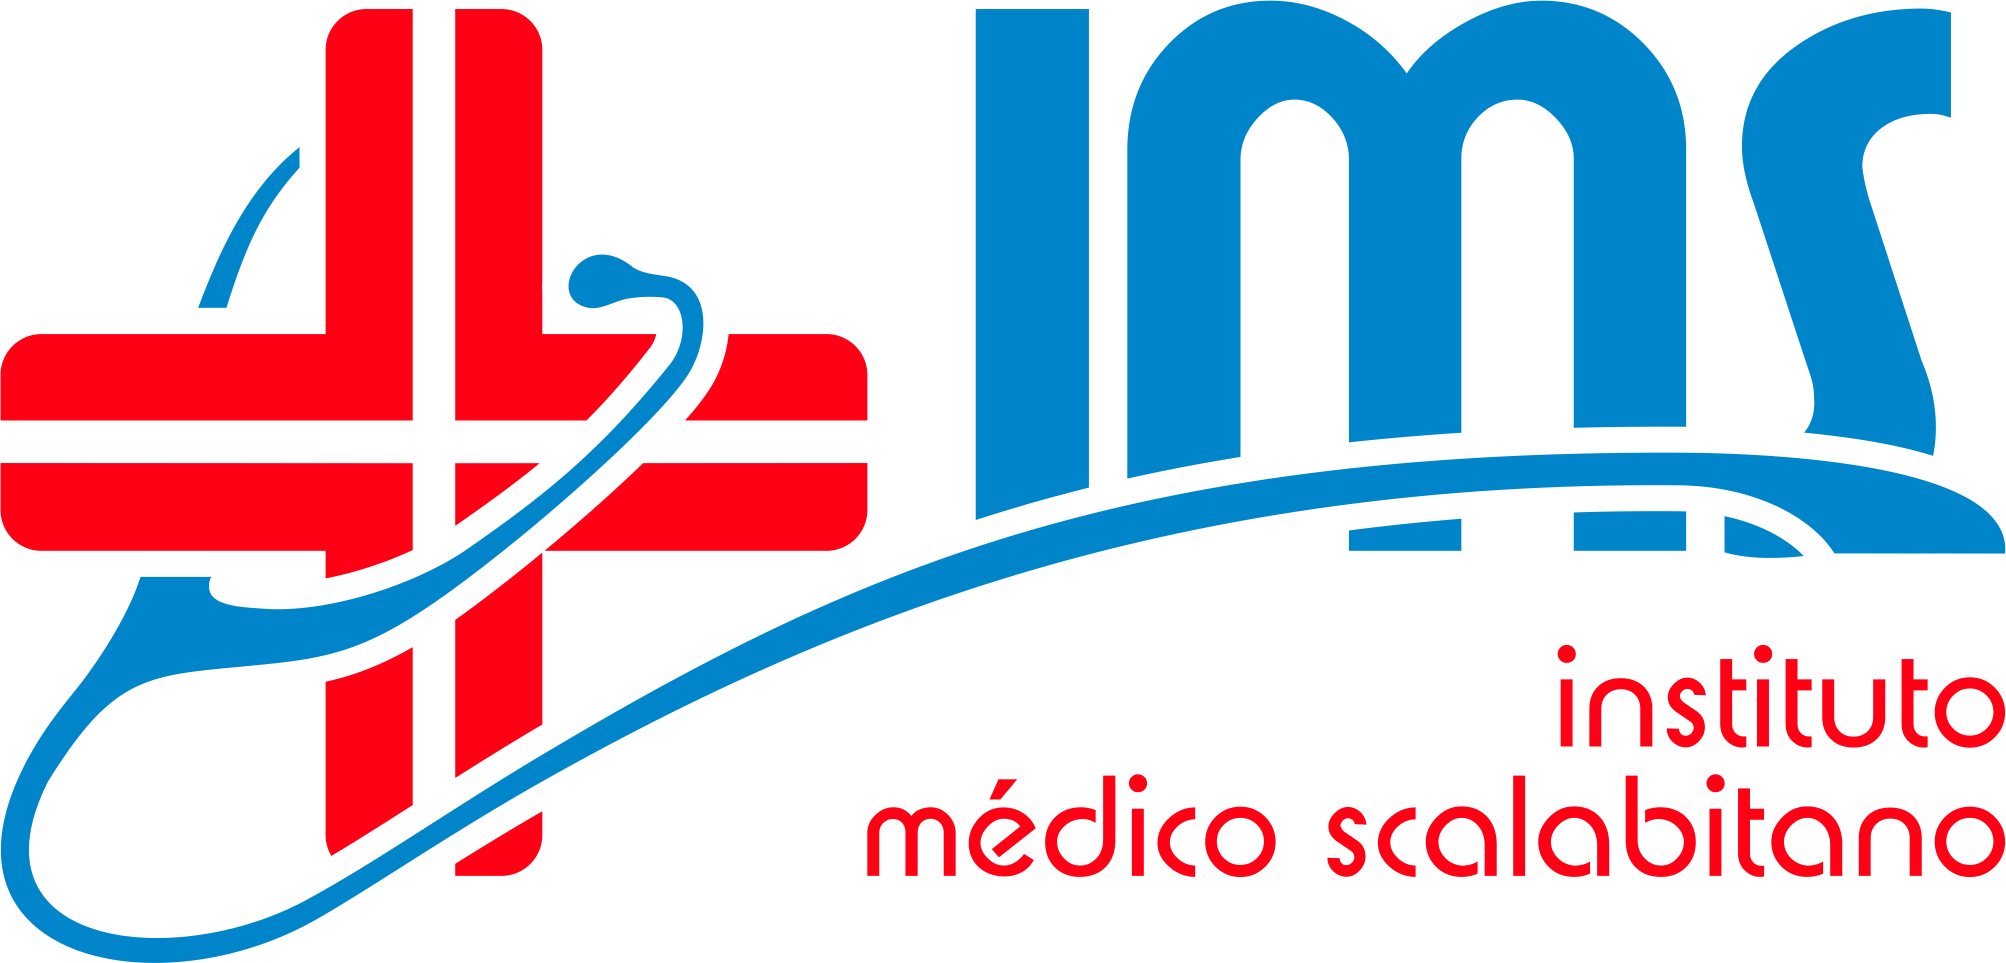 IMS - Instituto Médico Scalabitano